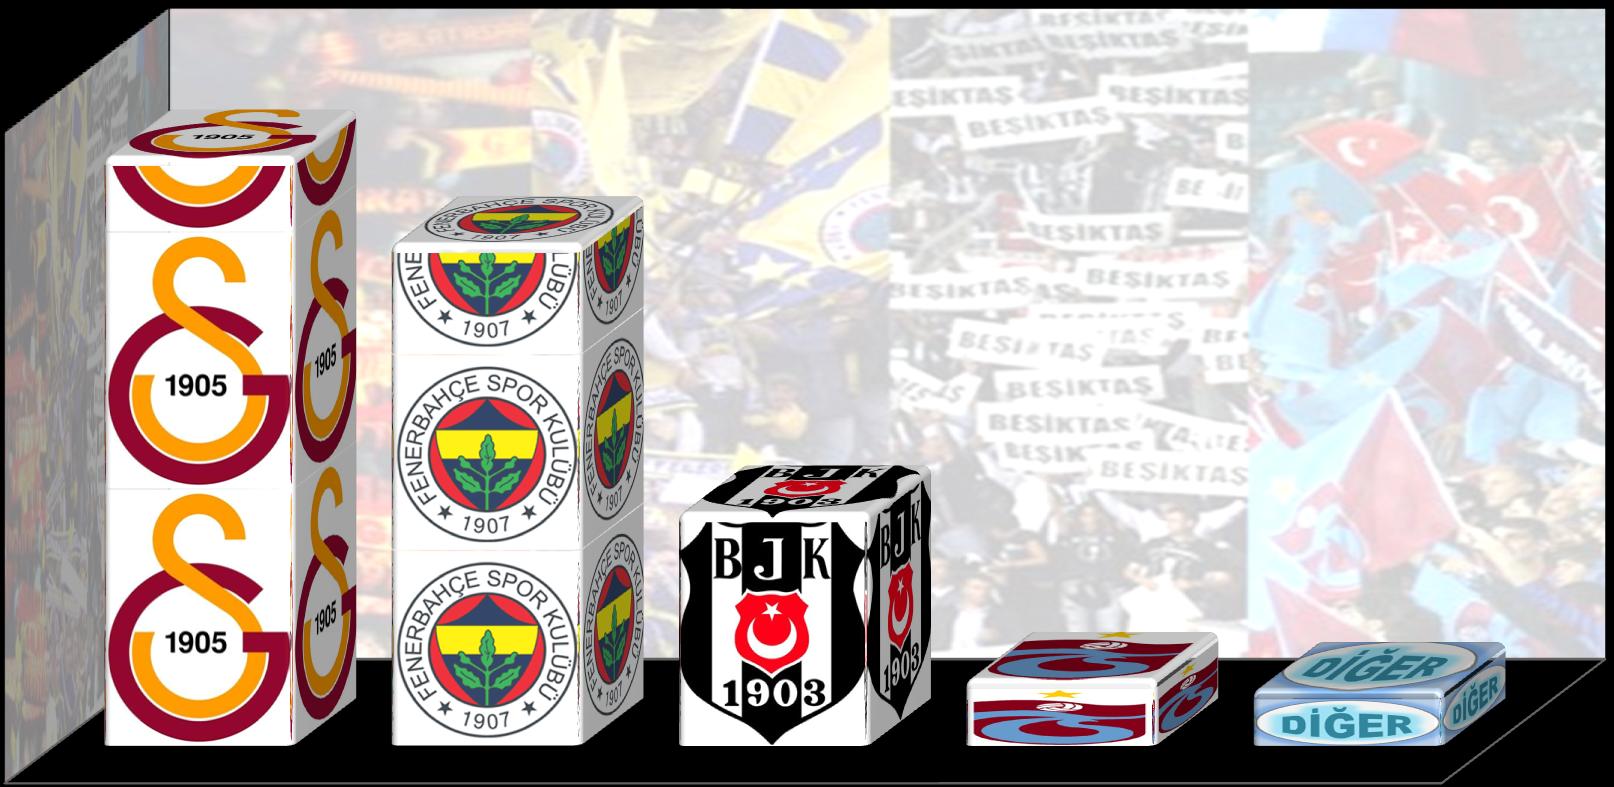 Tuttuğu takımı söyleyenlerin %41 i Galatasaray, %35 i Fenerbahçe, %16 sı Beşiktaş, %5 i Trabzonspor ve %4 ü ise diğer takımların